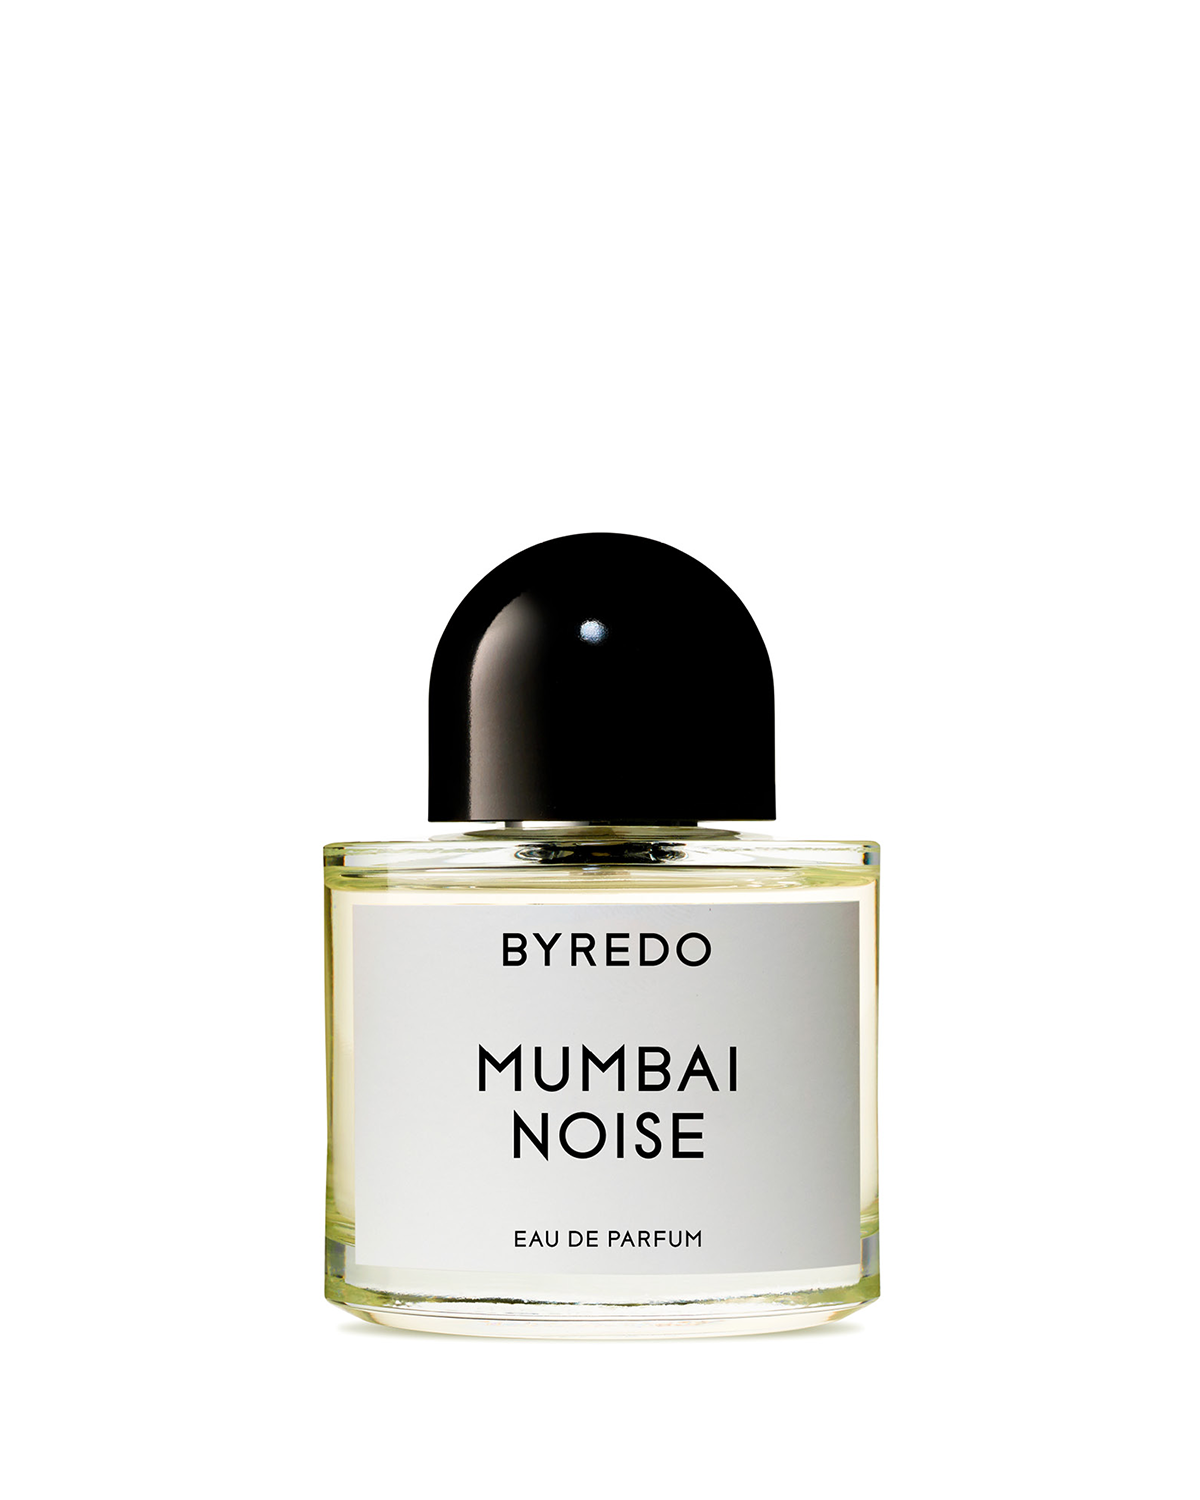 Mumbai Noise 50ml Eau de Parfum